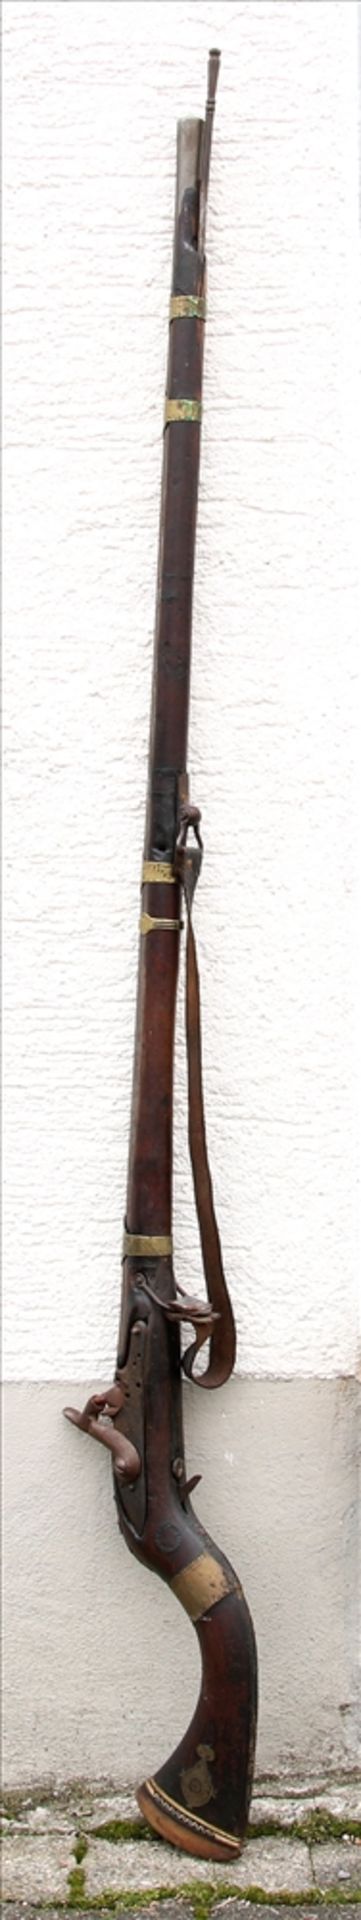 Steinschlossgewehr Aghanistan um 1900. Länge ca. 149 cm. Nicht geprüft, teils defekt. - Bild 2 aus 3